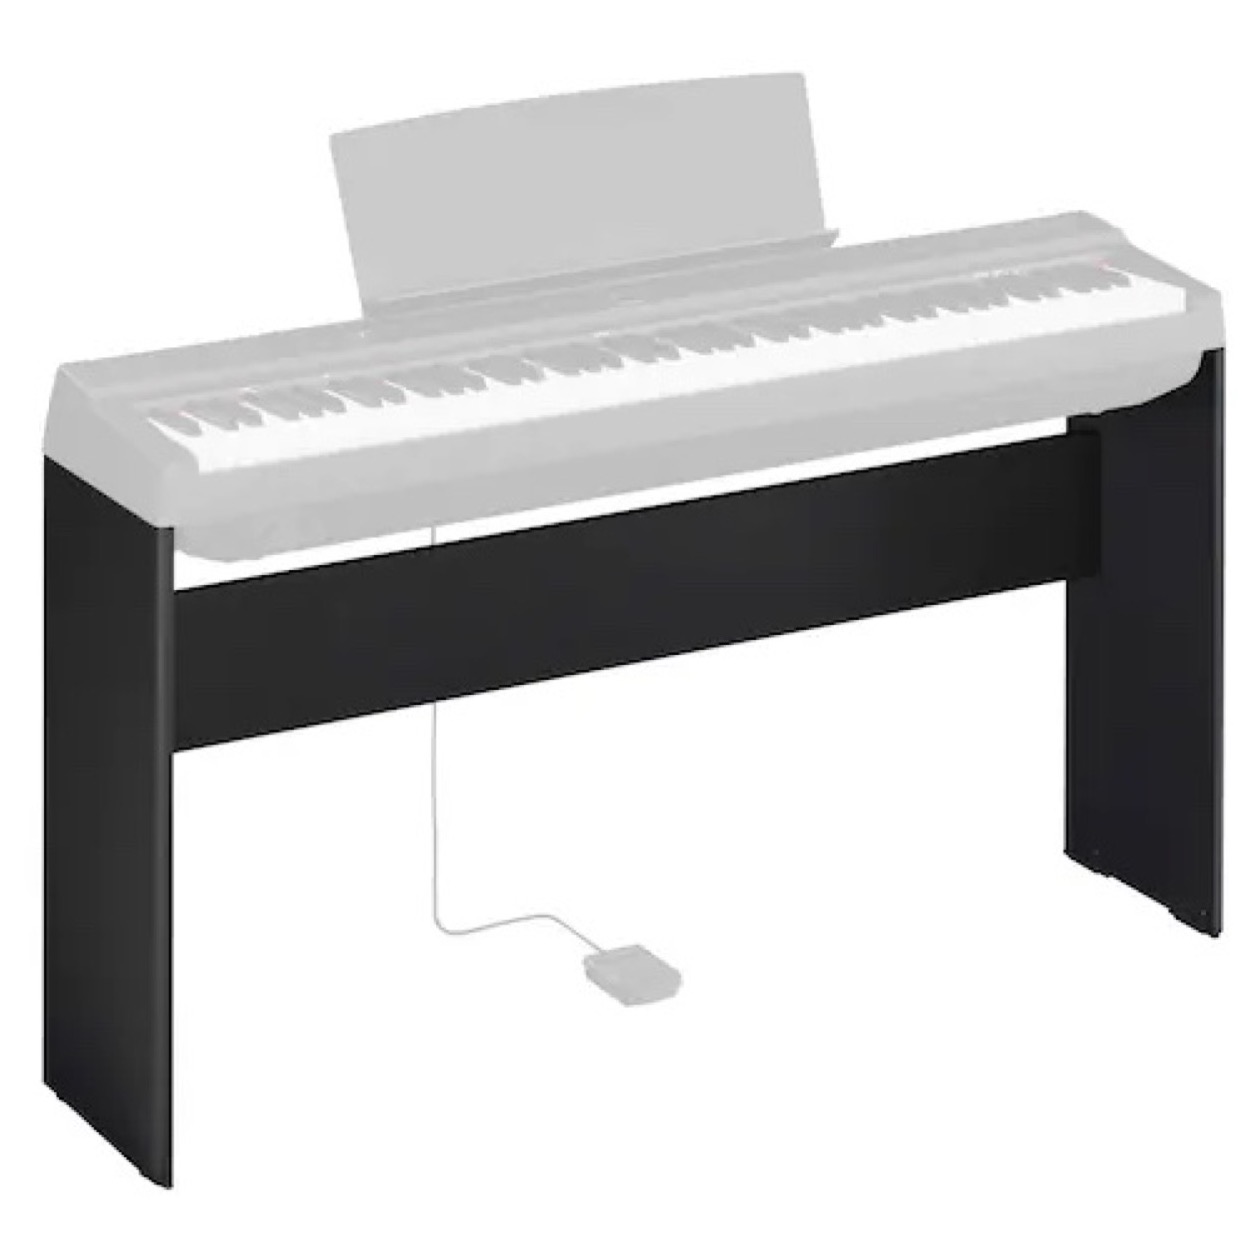 Yamaha L 125 / L125 Black Standaard voor Yamaha P125a Piano (zwart houten onderstel) AANBIEDINGSPRIJS !